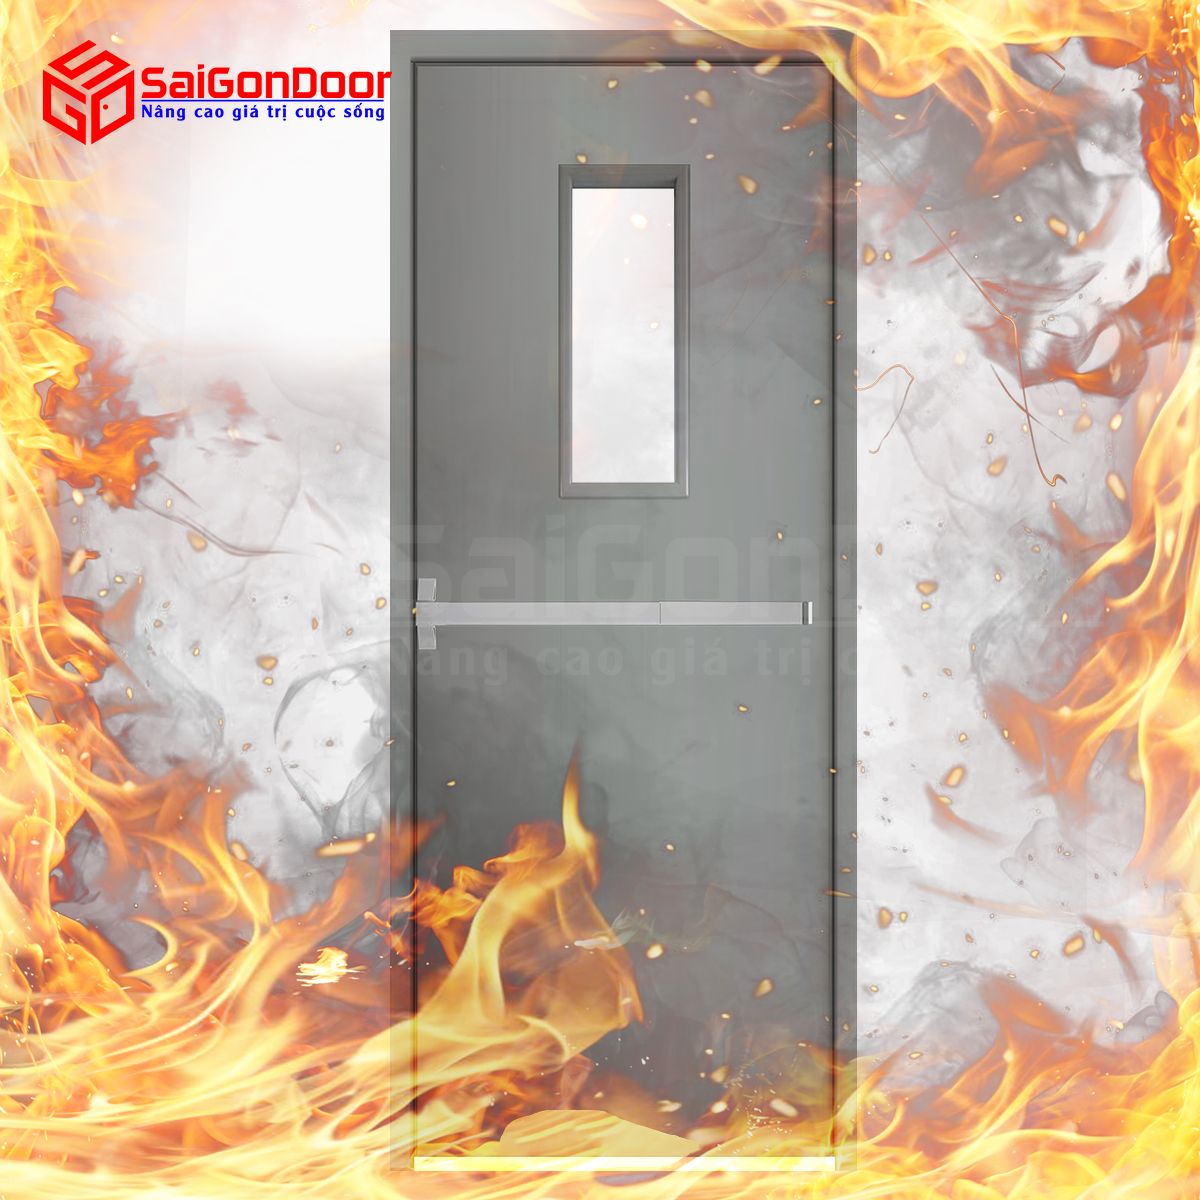 Trước khi được đưa vào sử dụng, cửa chống cháy cần kiểm định chất lượng và khả năng chống cháy